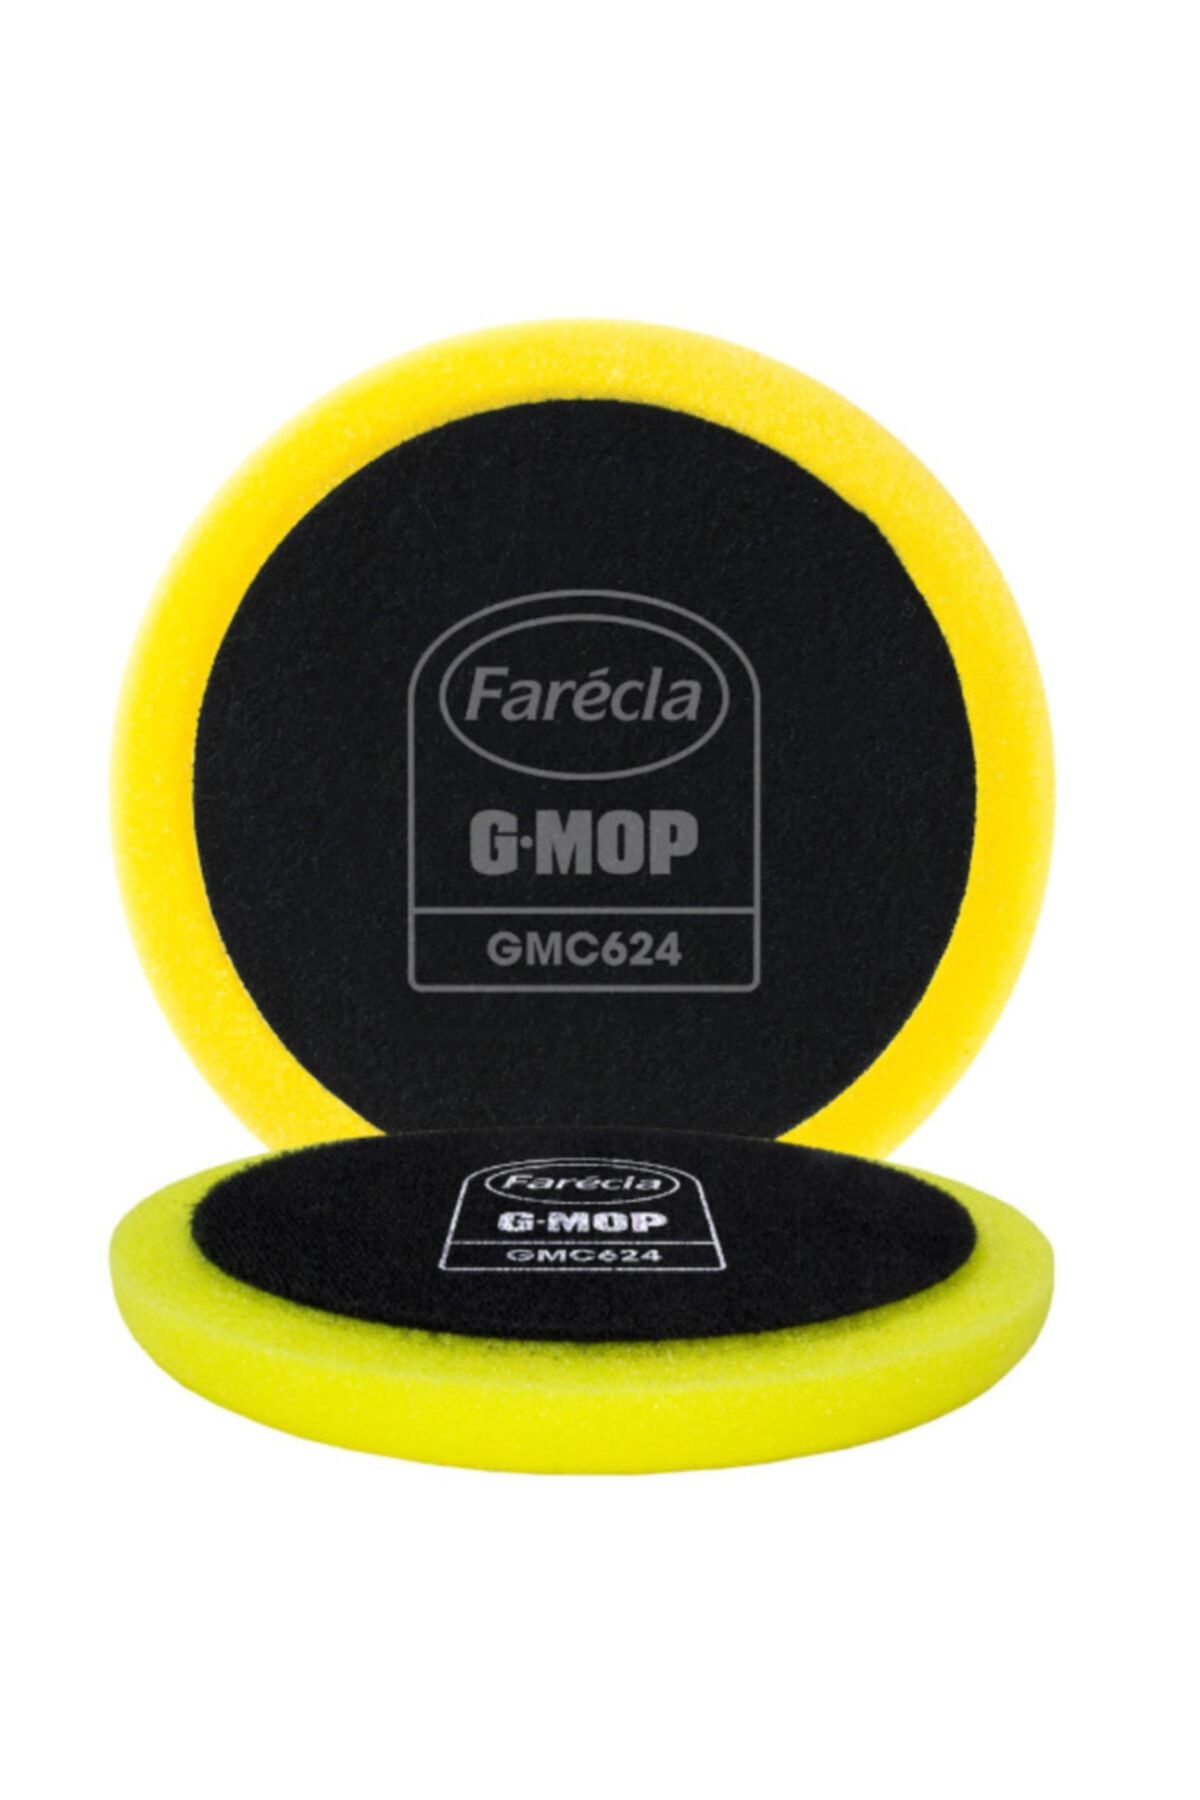 3M Farecla G-mop 360 Gmc624 Süper Aşındırıcı Polisaj Uyumlu Pasta Pedi 6''